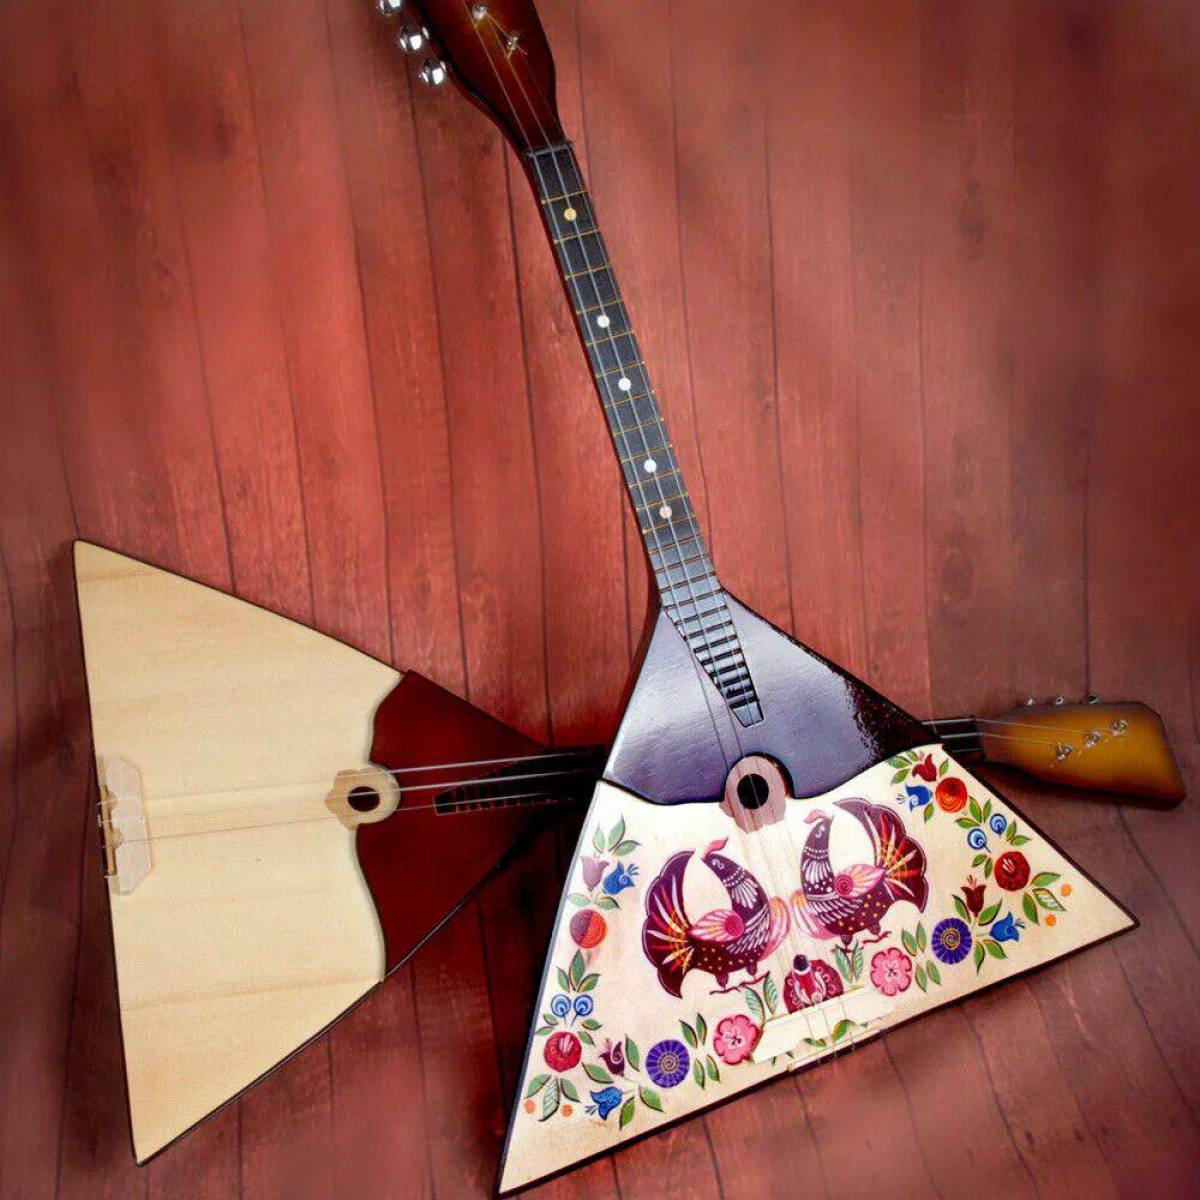 Музыкальные инструменты рф. Русские народные музыкальные инструменты балалайка. Балалайка 6 струн. Балалайка струнные Щипковые музыкальные инструменты. Балалайка Прима.